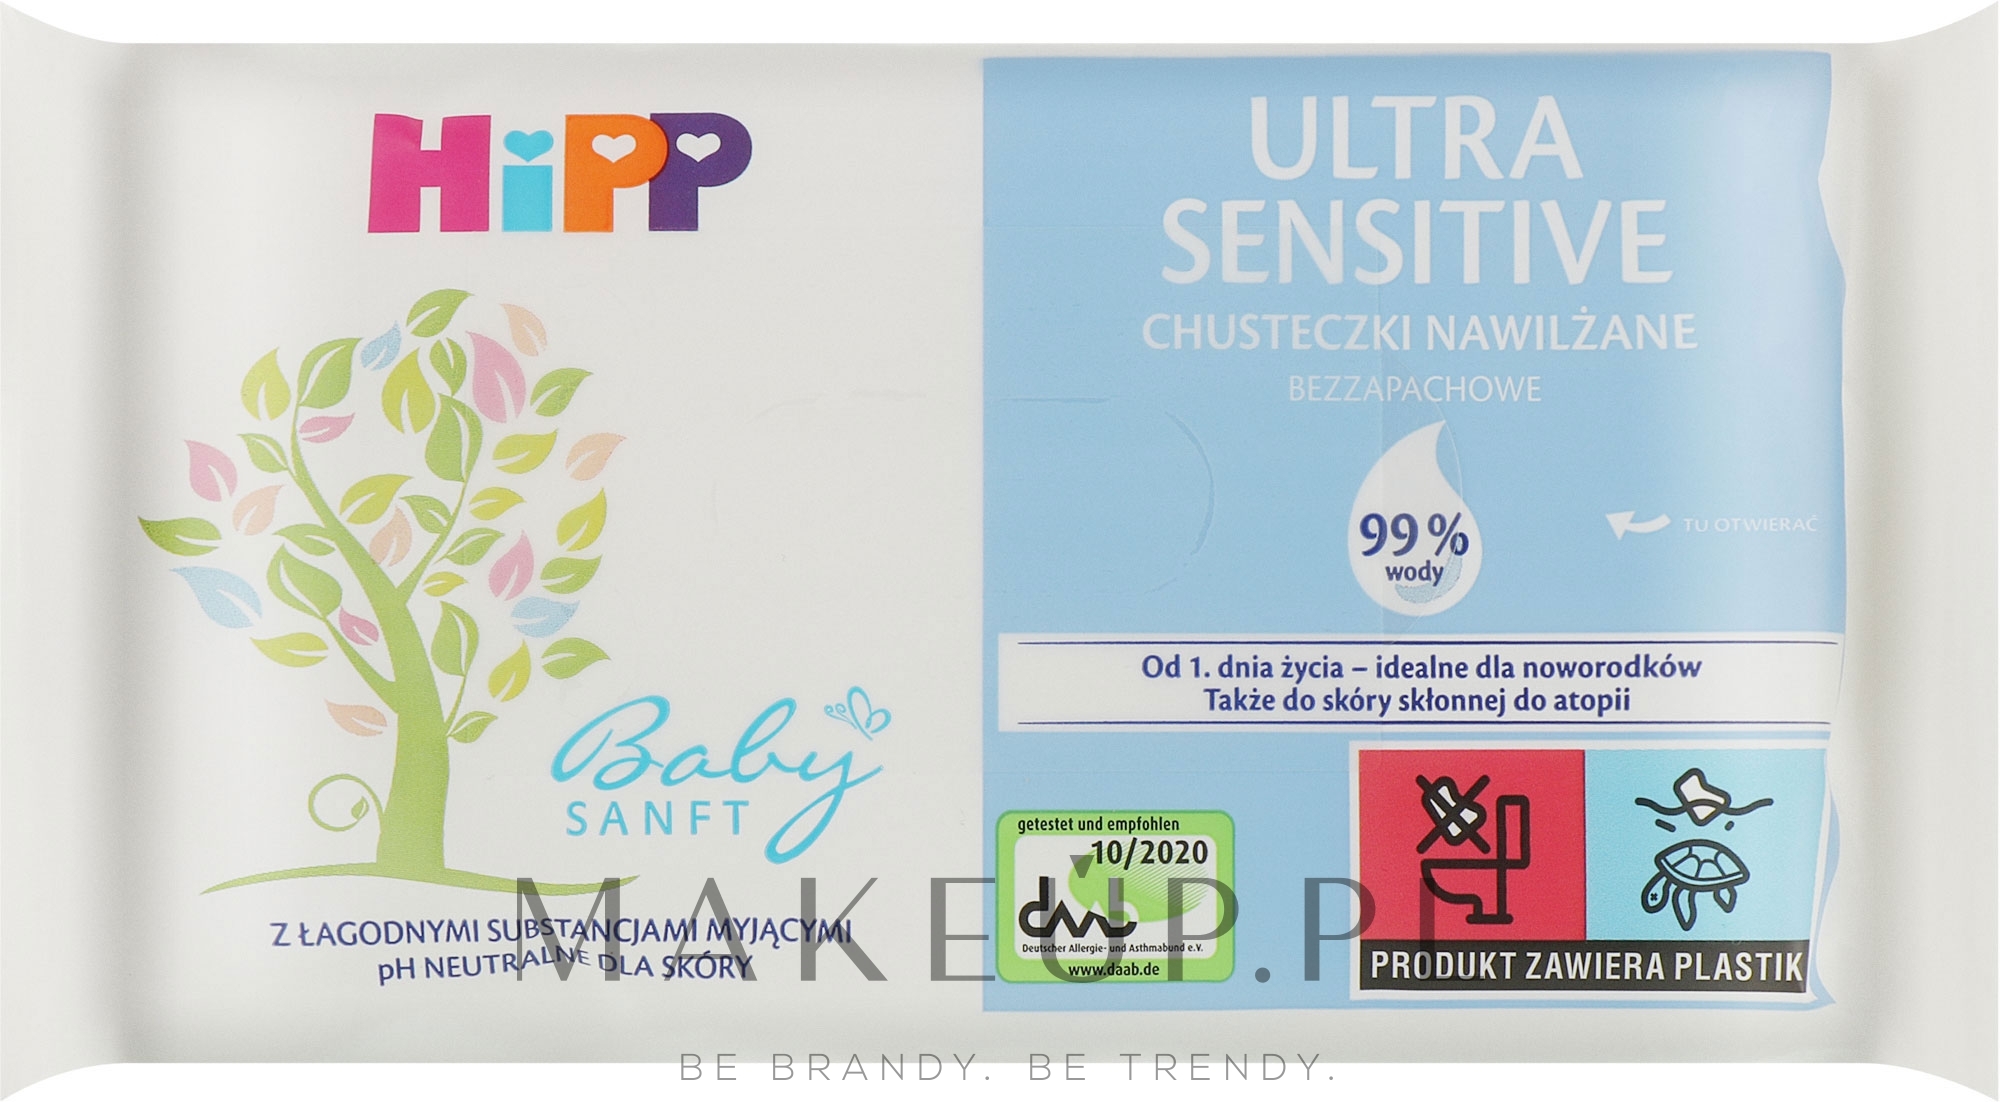 Chusteczki dla dzieci Ultranawilżenie, 52 szt - Hipp BabySanft — Zdjęcie 52 szt.